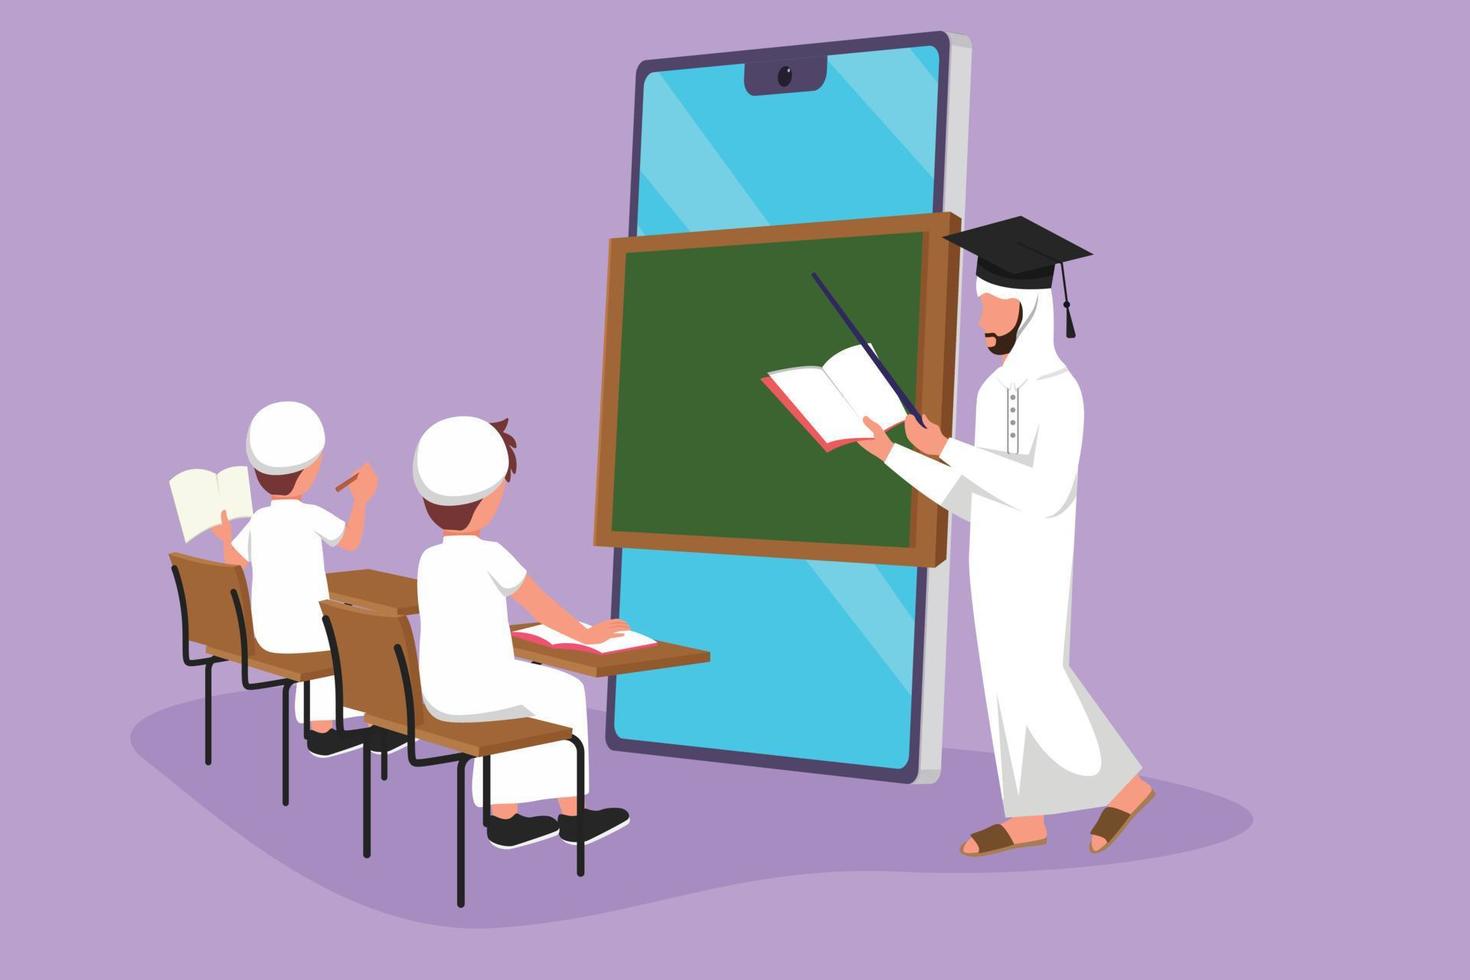 dibujos animados de estilo plano dibujando a un maestro árabe parado frente a la pantalla del teléfono inteligente sosteniendo un libro y enseñando a estudiantes de secundaria sentados en una silla cerca del escritorio. ilustración vectorial de diseño gráfico vector